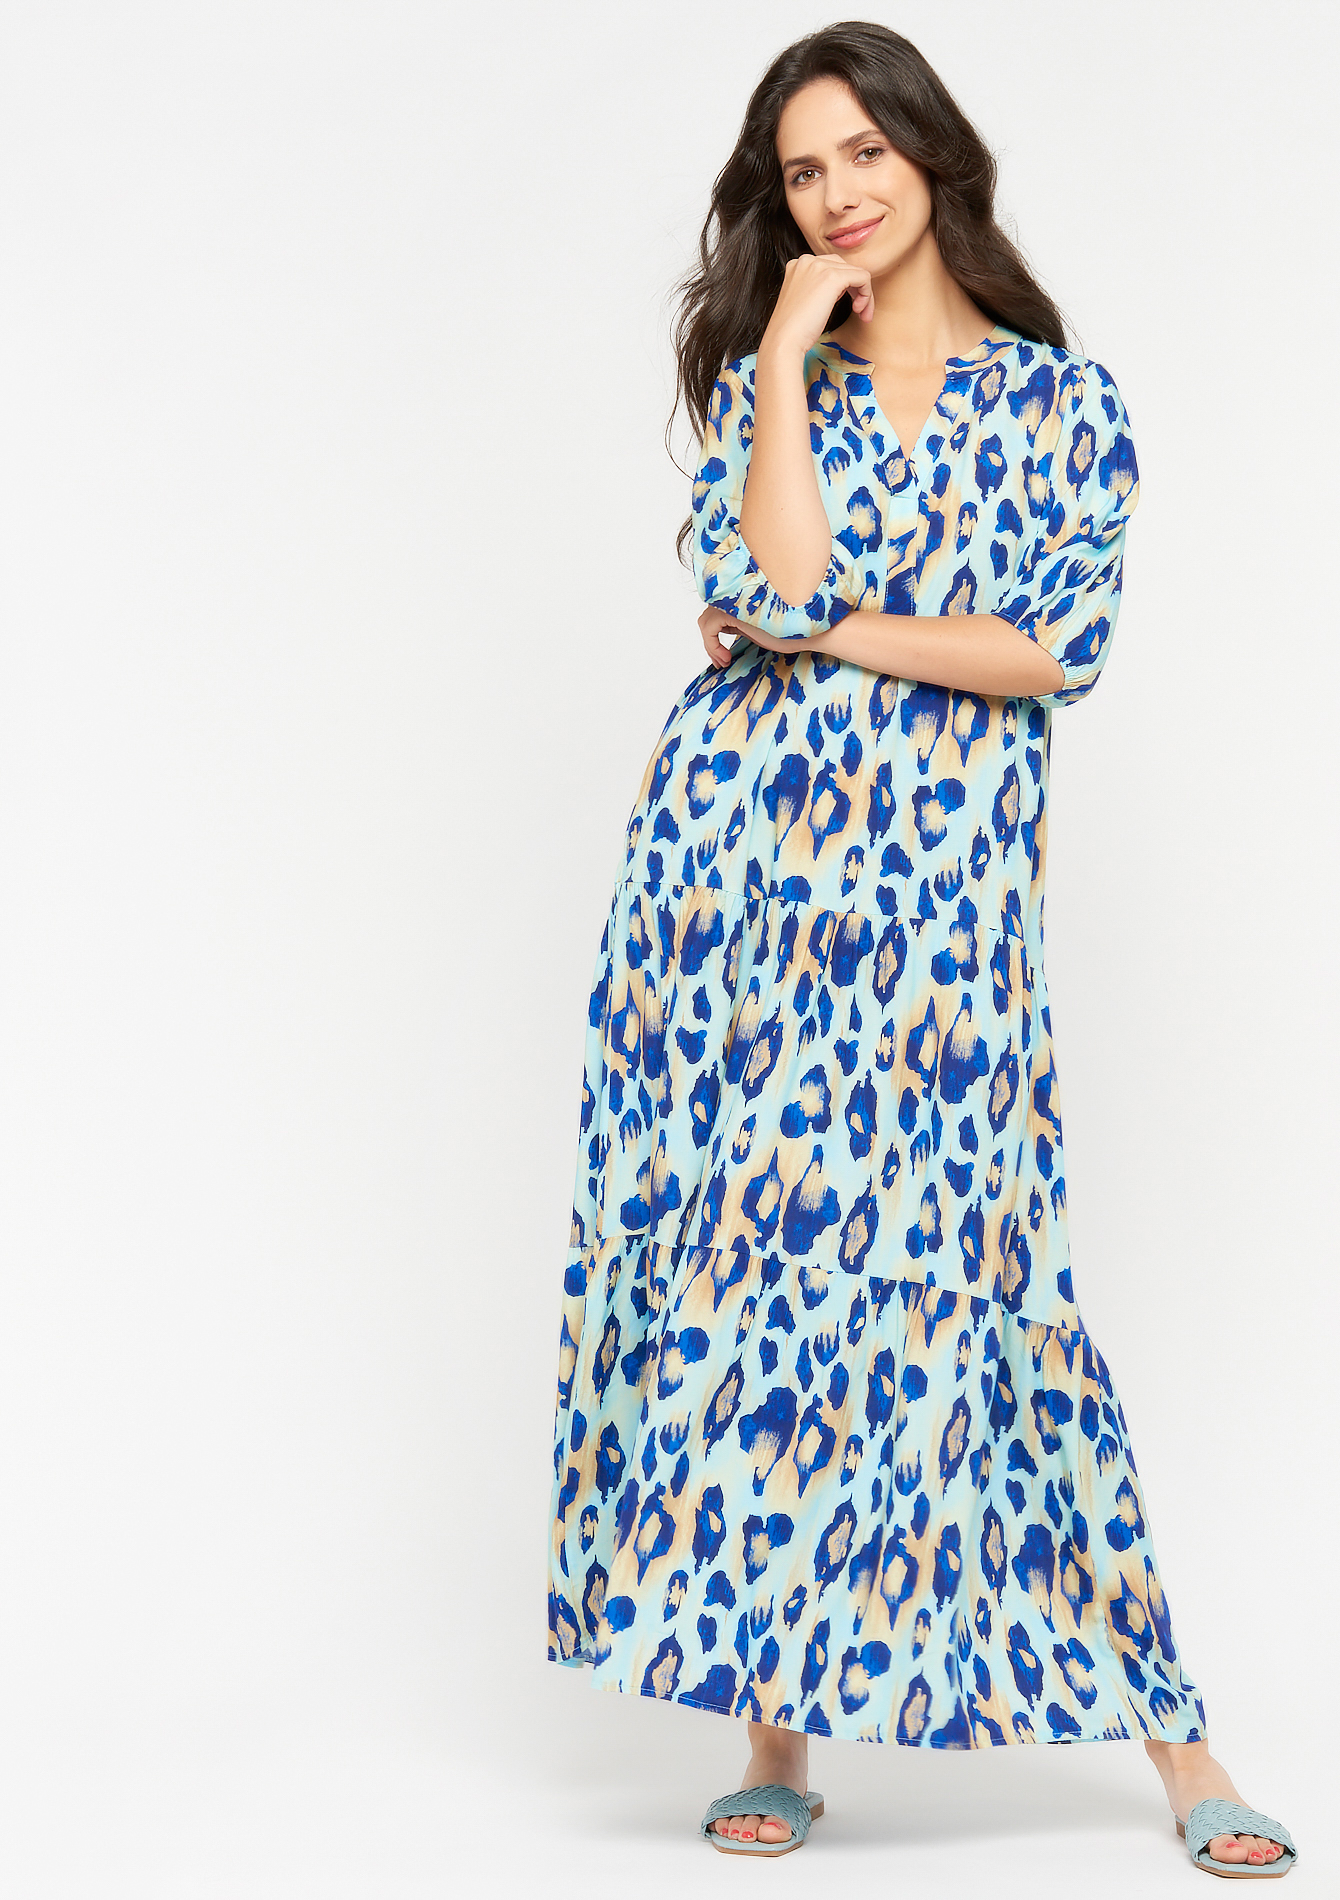 Lange jurk met kleurrijke luipaard print - BLUE ELECTRICAL - 08601393_2805